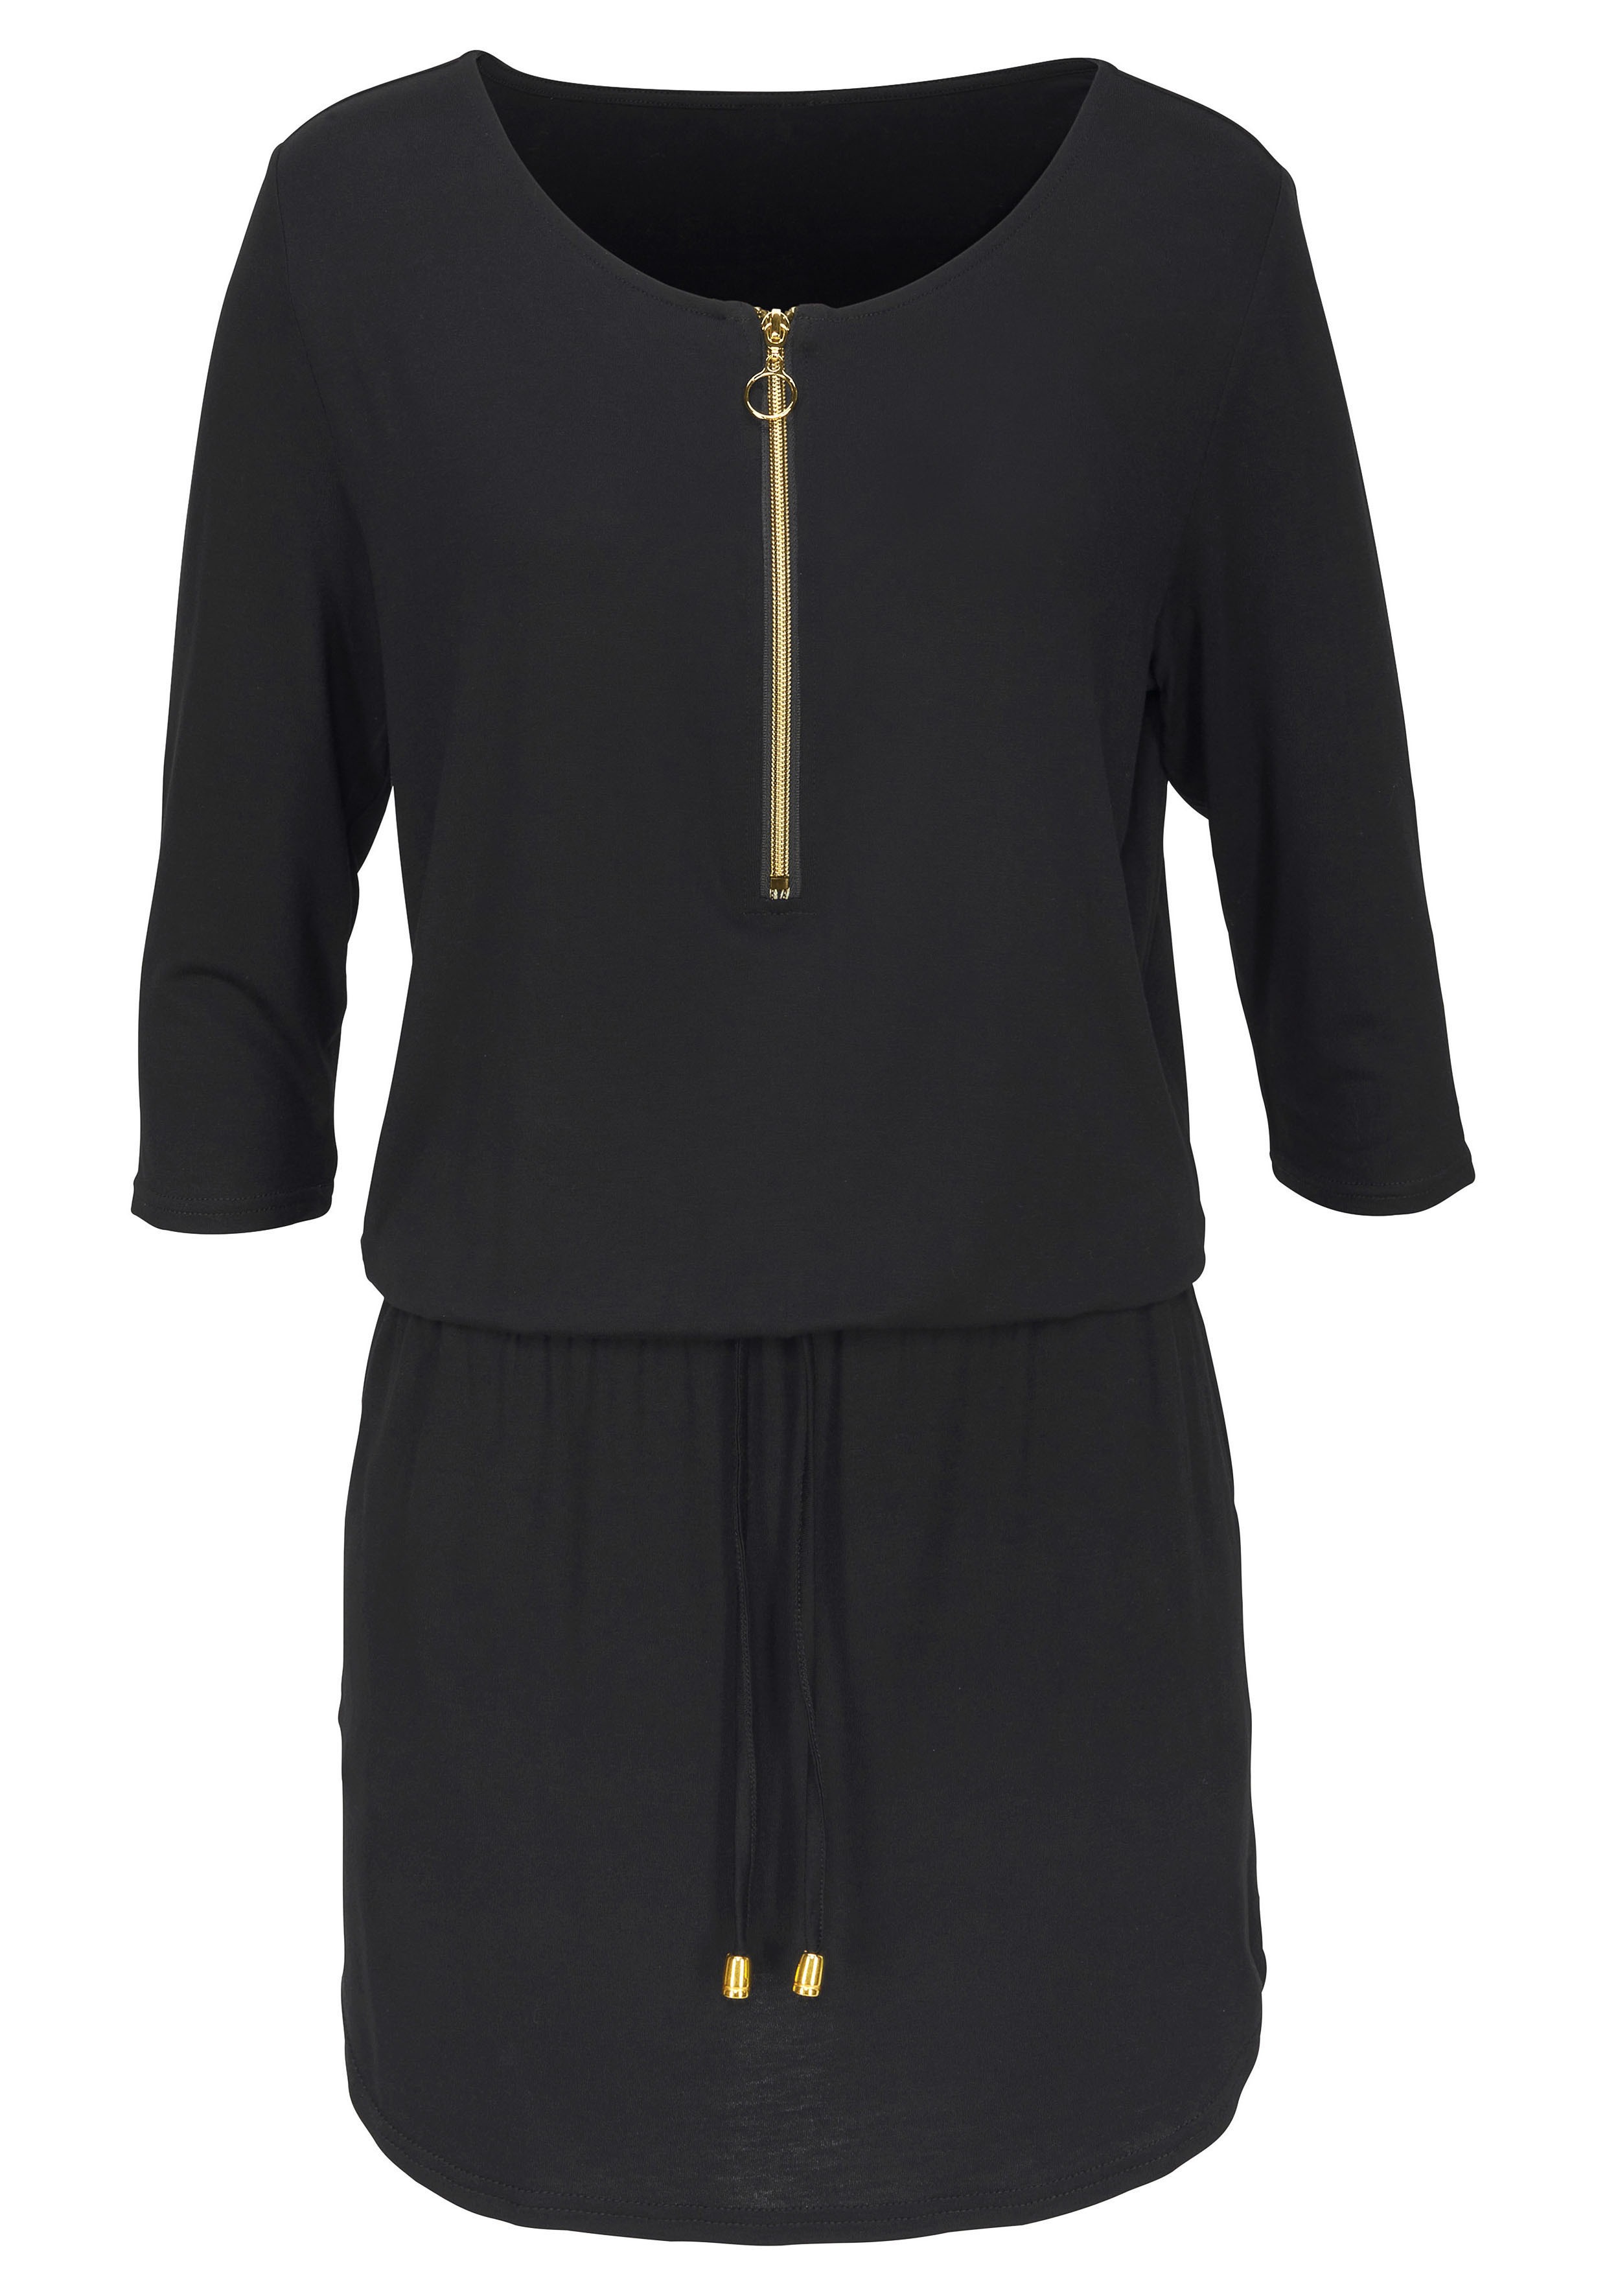 LASCANA Jerseykleid, mit goldfarbenem Reißverschlussdetail » LASCANA |  Bademode, Unterwäsche & Lingerie online kaufen